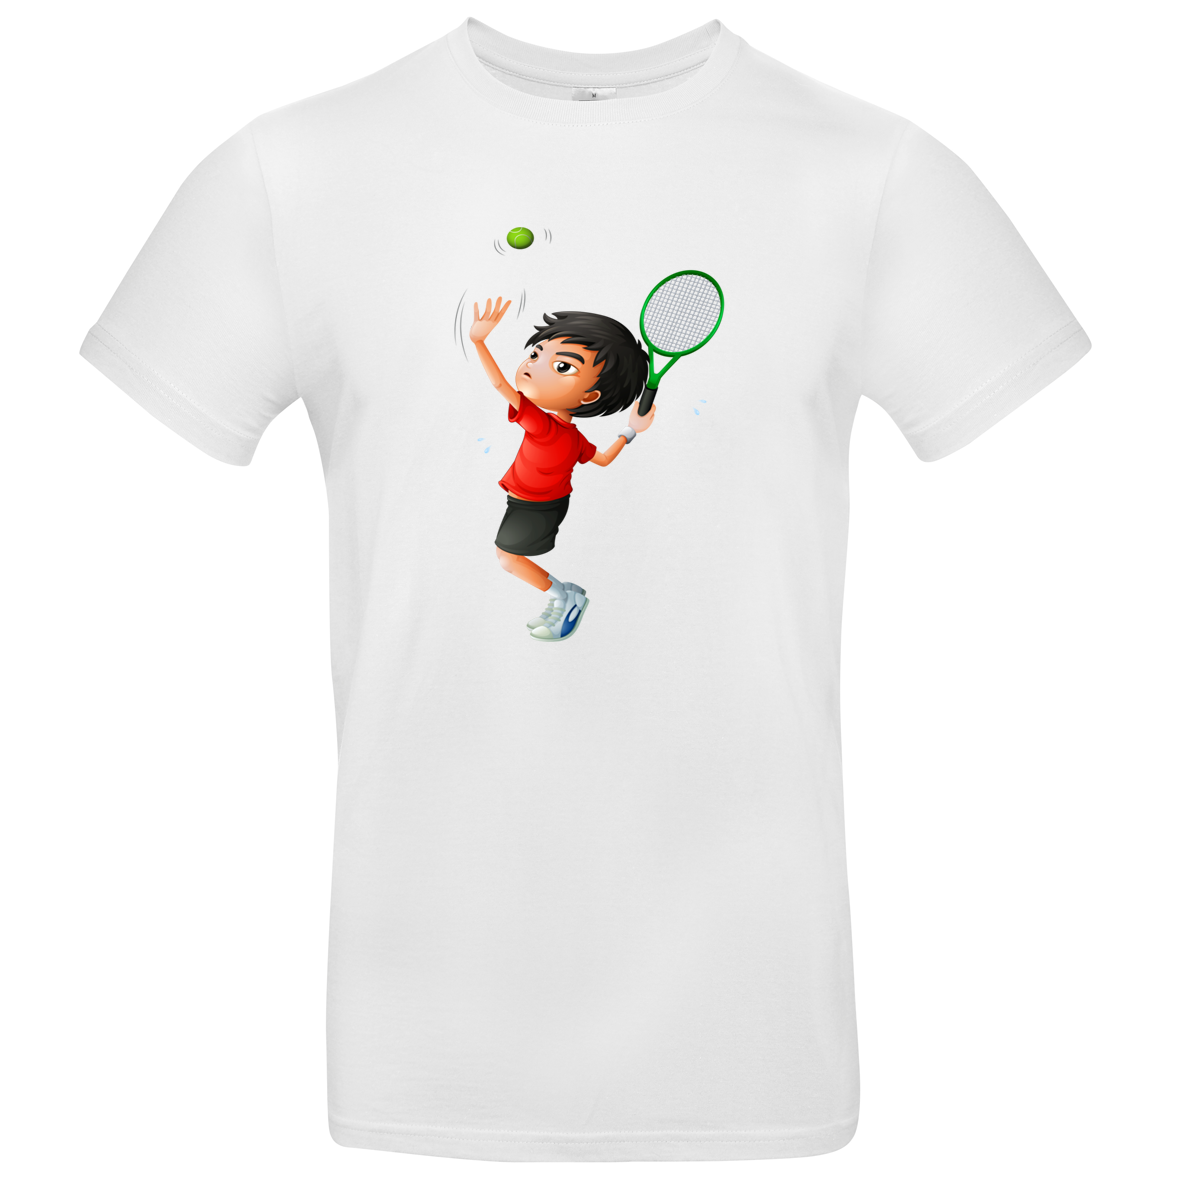 Kinder T Shirt mit Tennis Boy 104 - 158